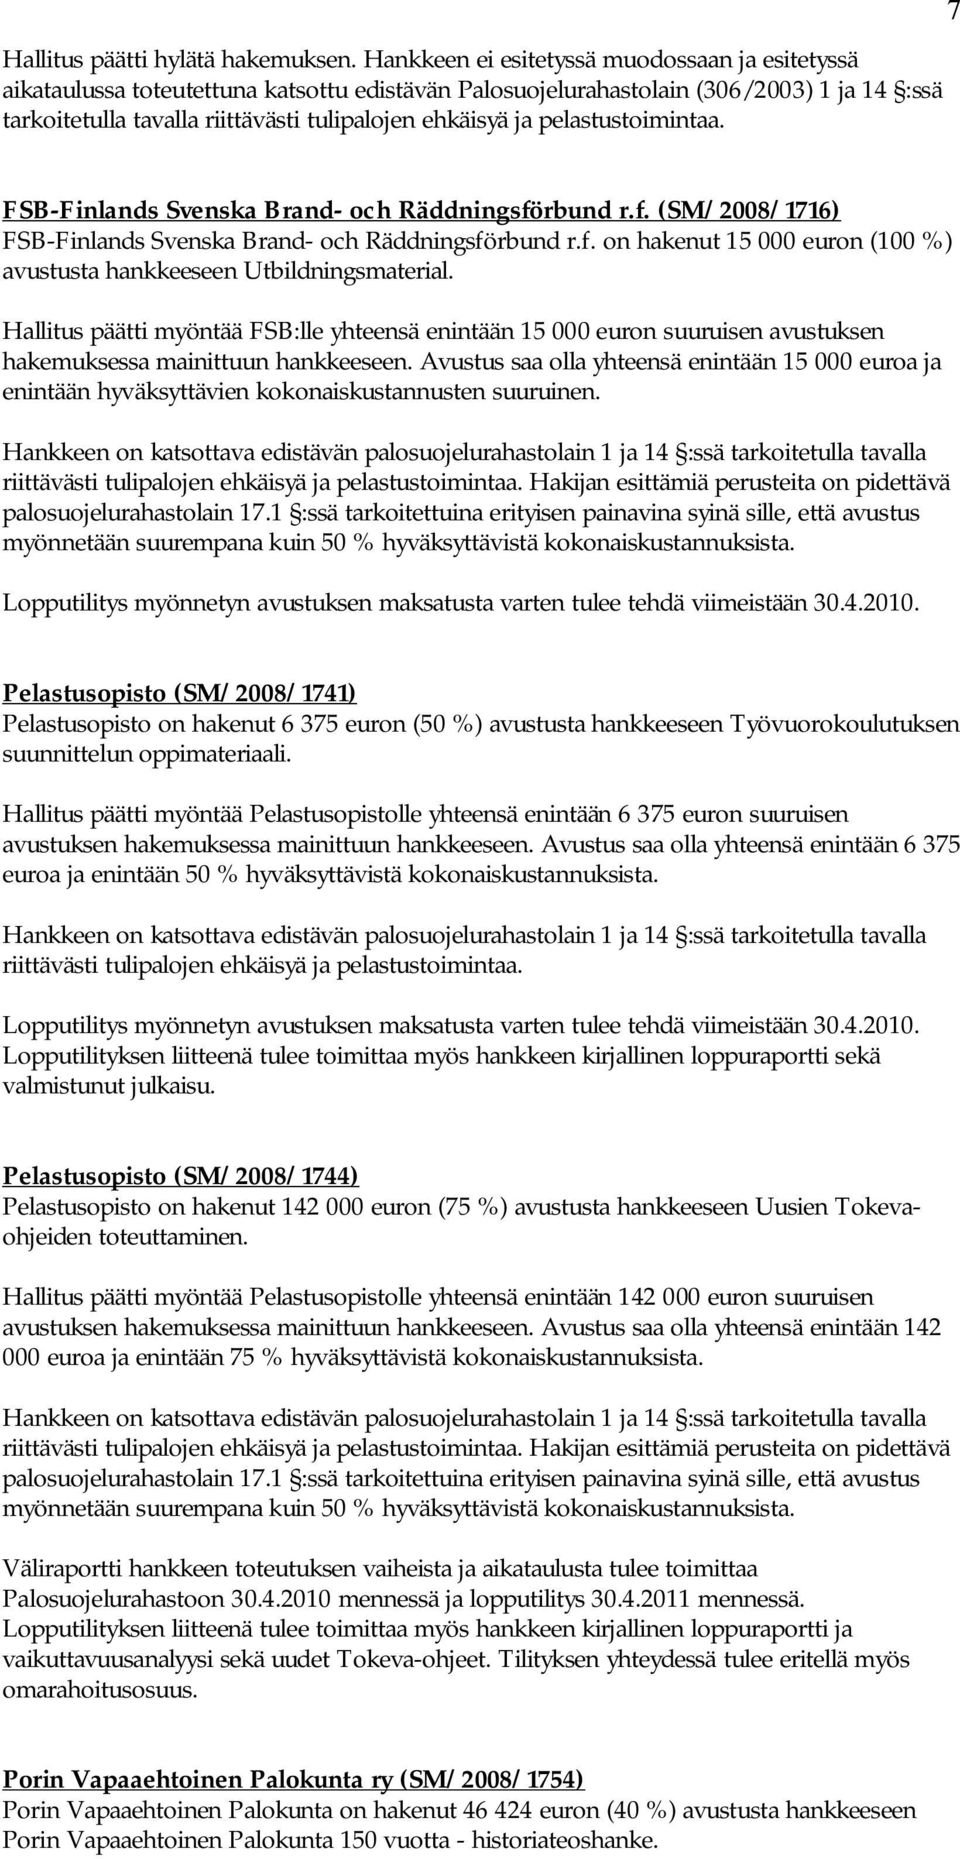 Räddningsförbund r.f. (SM/2008/1716) FSB-Finlands Svenska Brand- och Räddningsförbund r.f. on hakenut 15 000 euron (100 %) avustusta hankkeeseen Utbildningsmaterial.